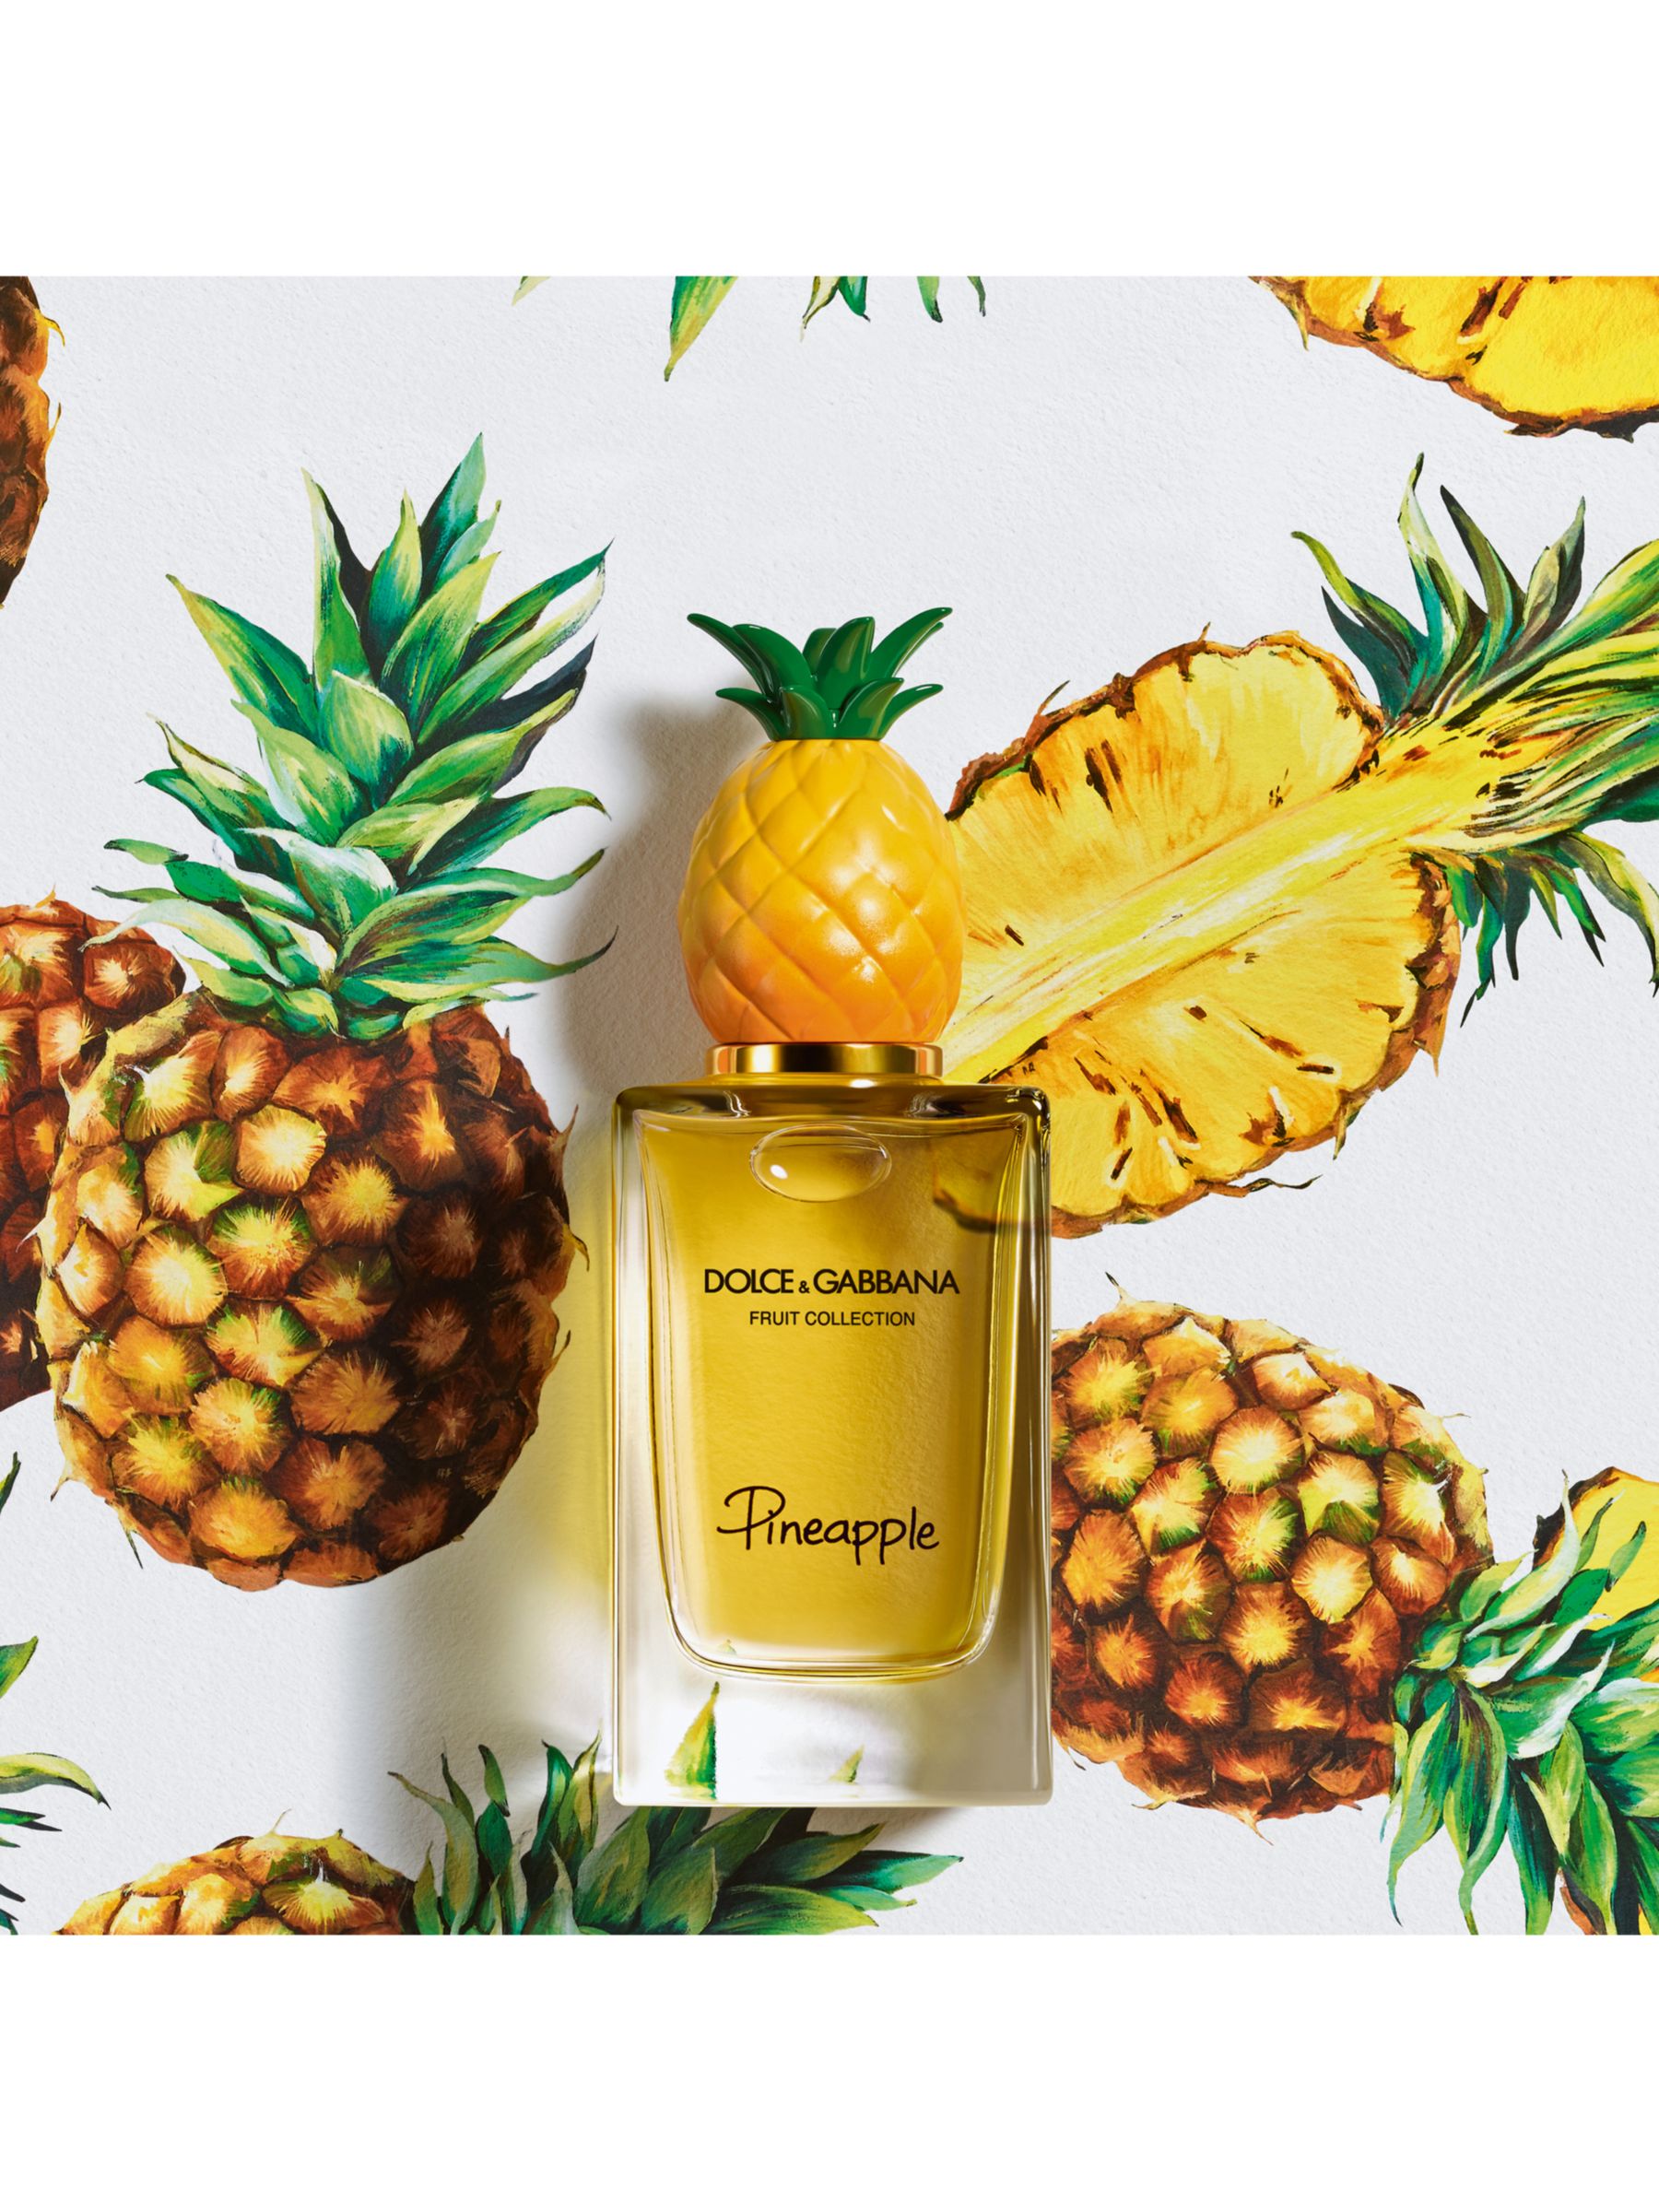 Dolce & Gabbana Fruit Collection Pineapple Eau de Toilette, 150ml at John  Lewis & Partners